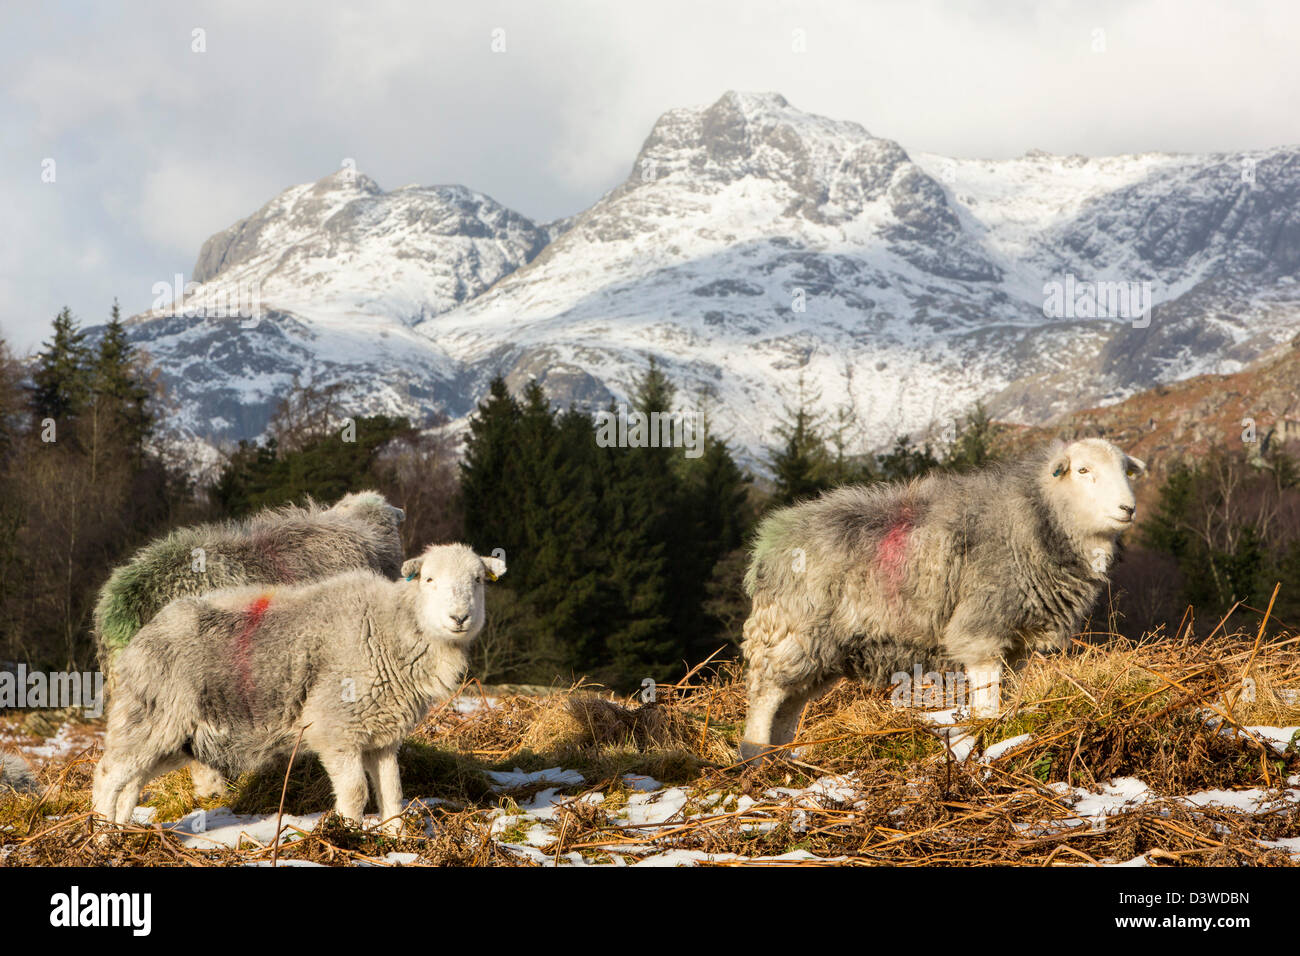 Die Langdale Pikes aus Elterwater gemeinsamen im Langdale Valley, Lake District, UK, mit Herdwick Schafen im Vordergrund. Stockfoto